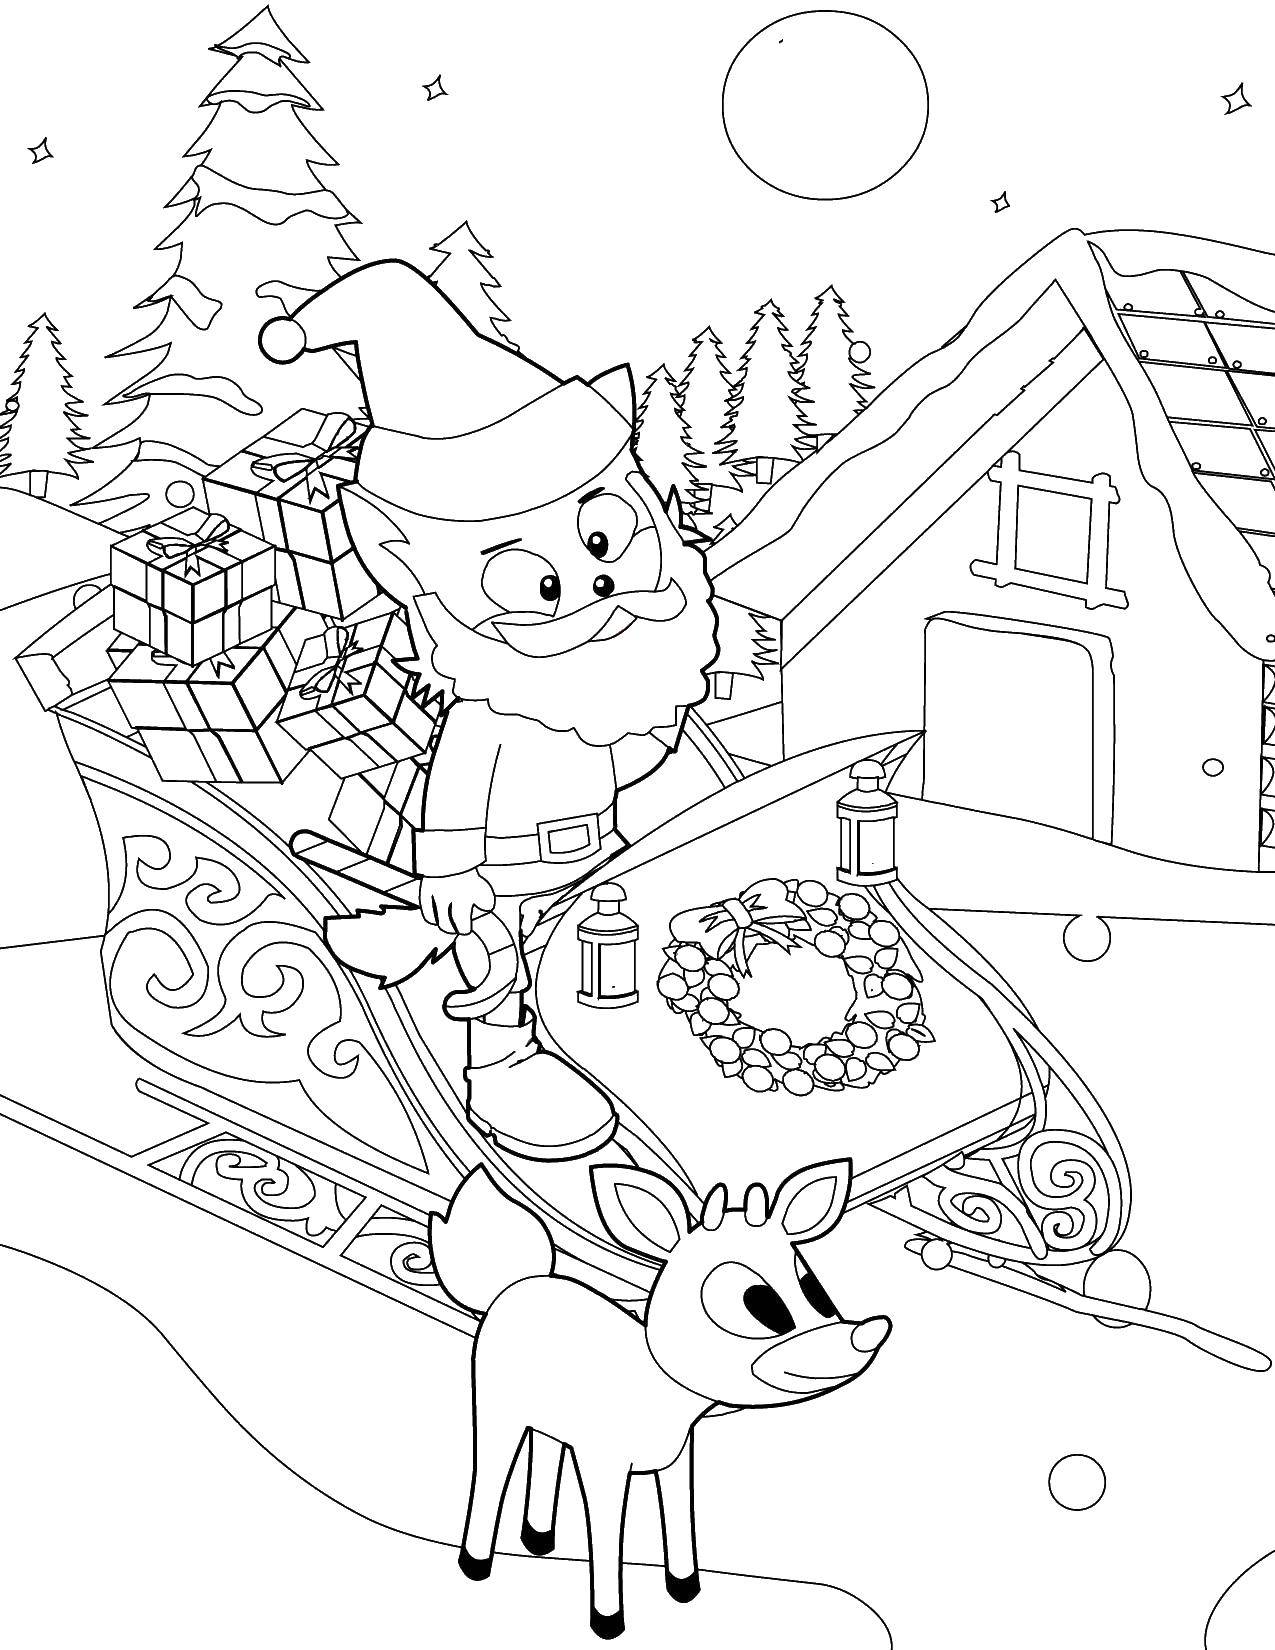 Название: Раскраска Санта на санях и олененок. Категория: Рождество. Теги: рождество, Санта Клаус, олени, сани.